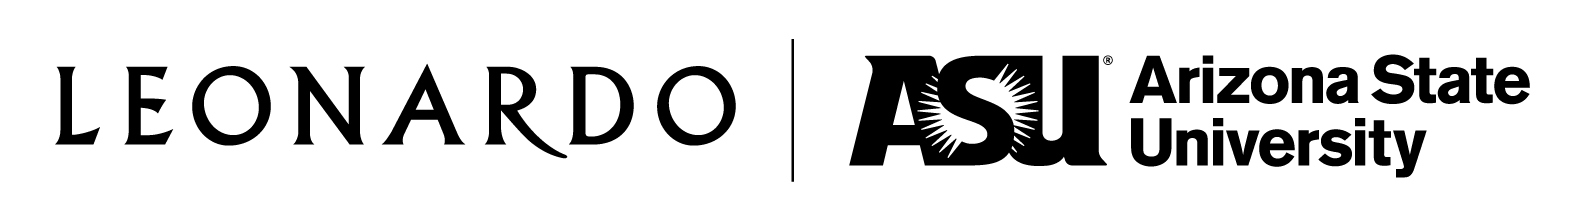 Leonardo ASU Logo